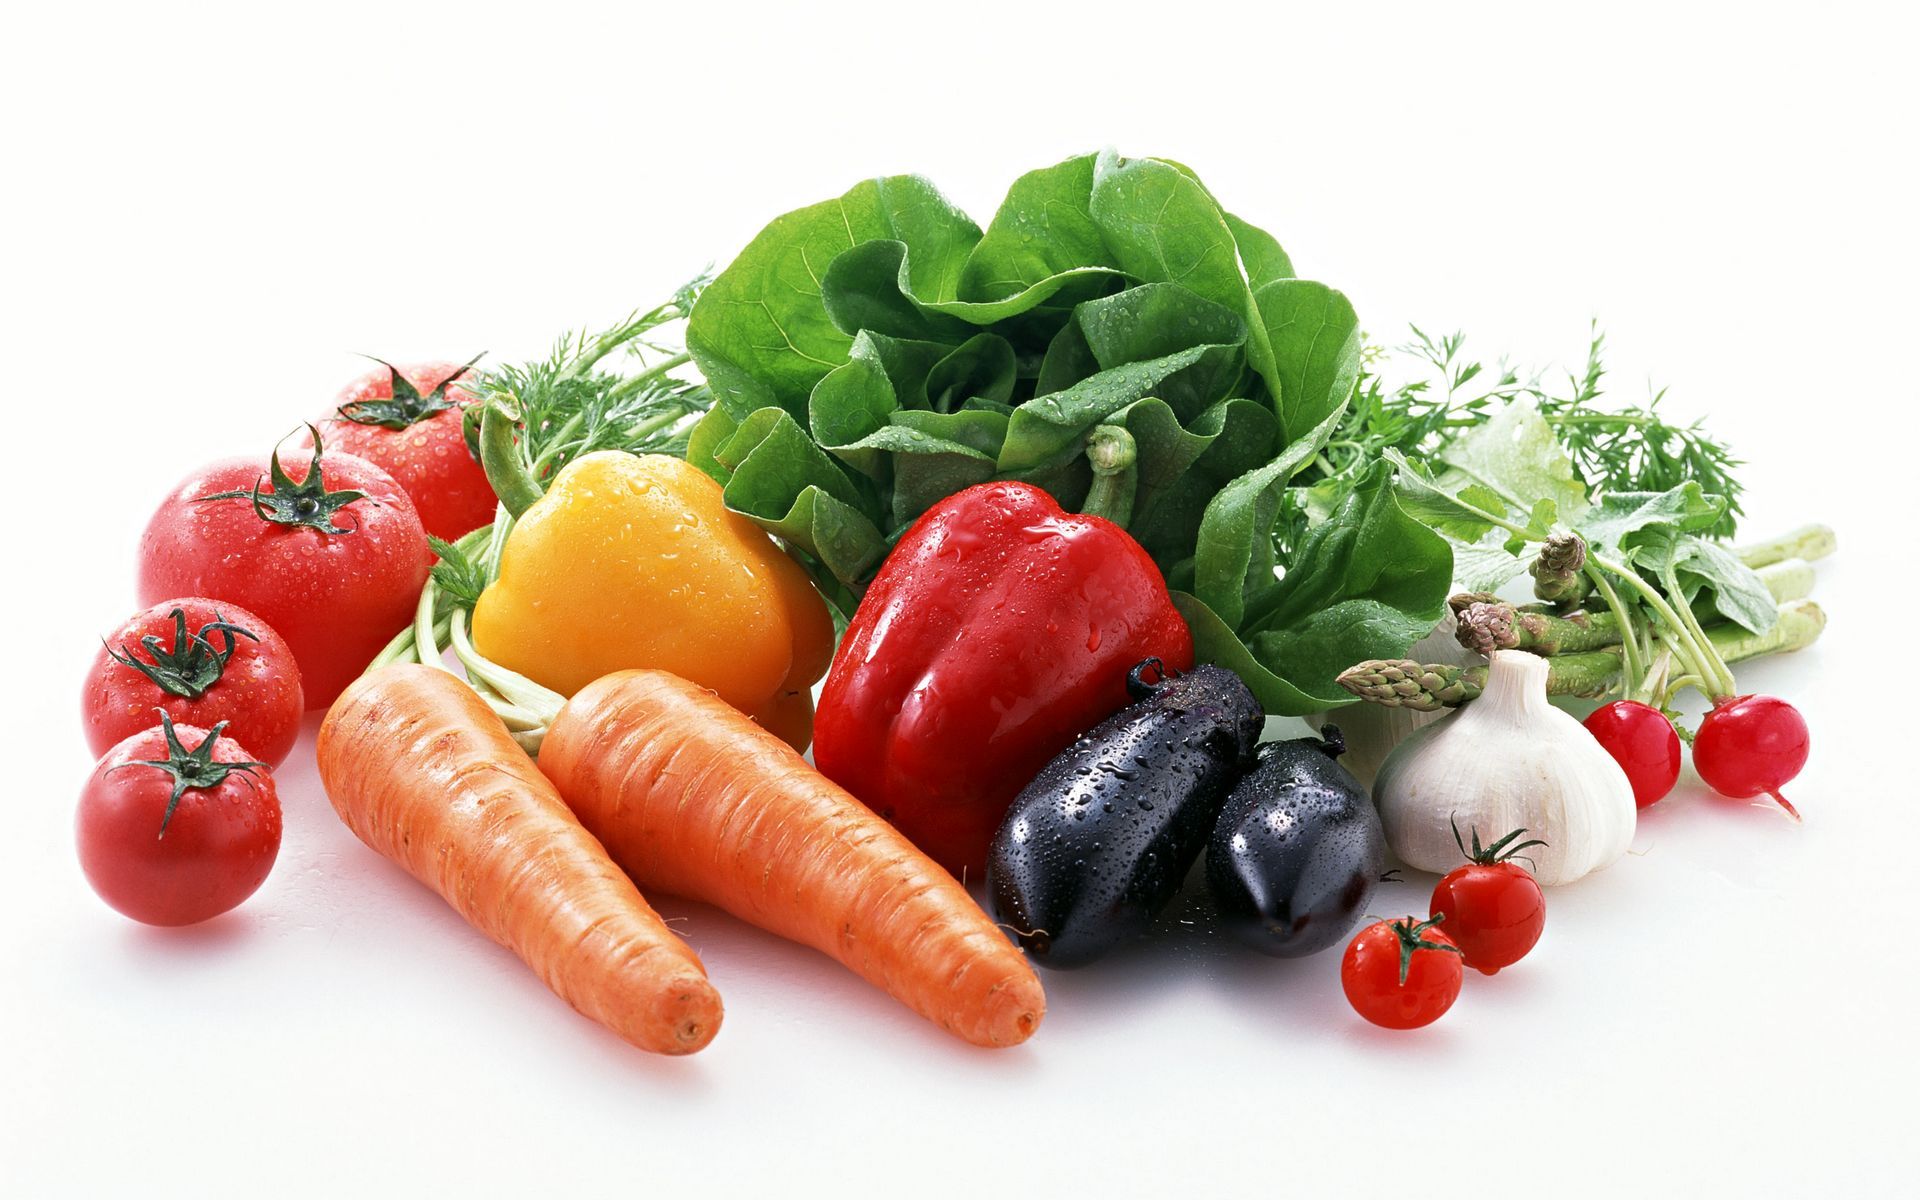 生吃蔬菜好吗 盘点生吃最营养的蔬菜